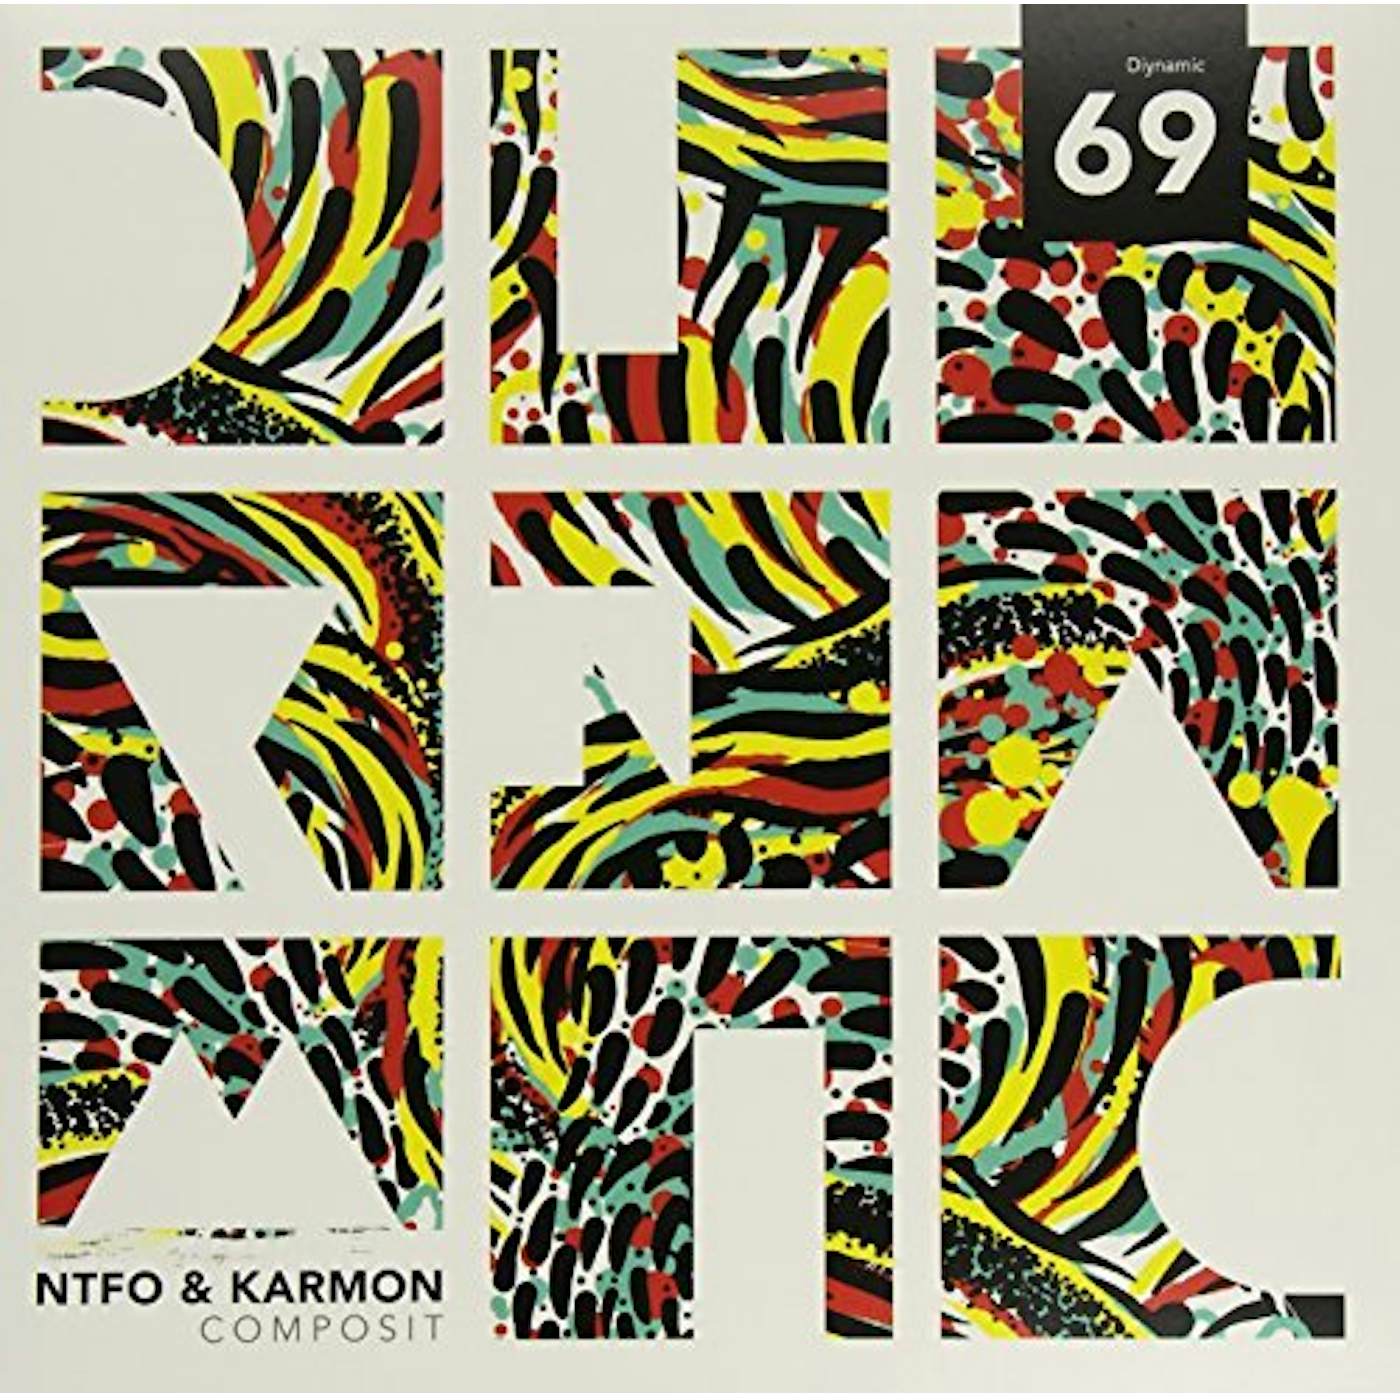 NTFO & Karmon COMPOSIT Vinyl Record